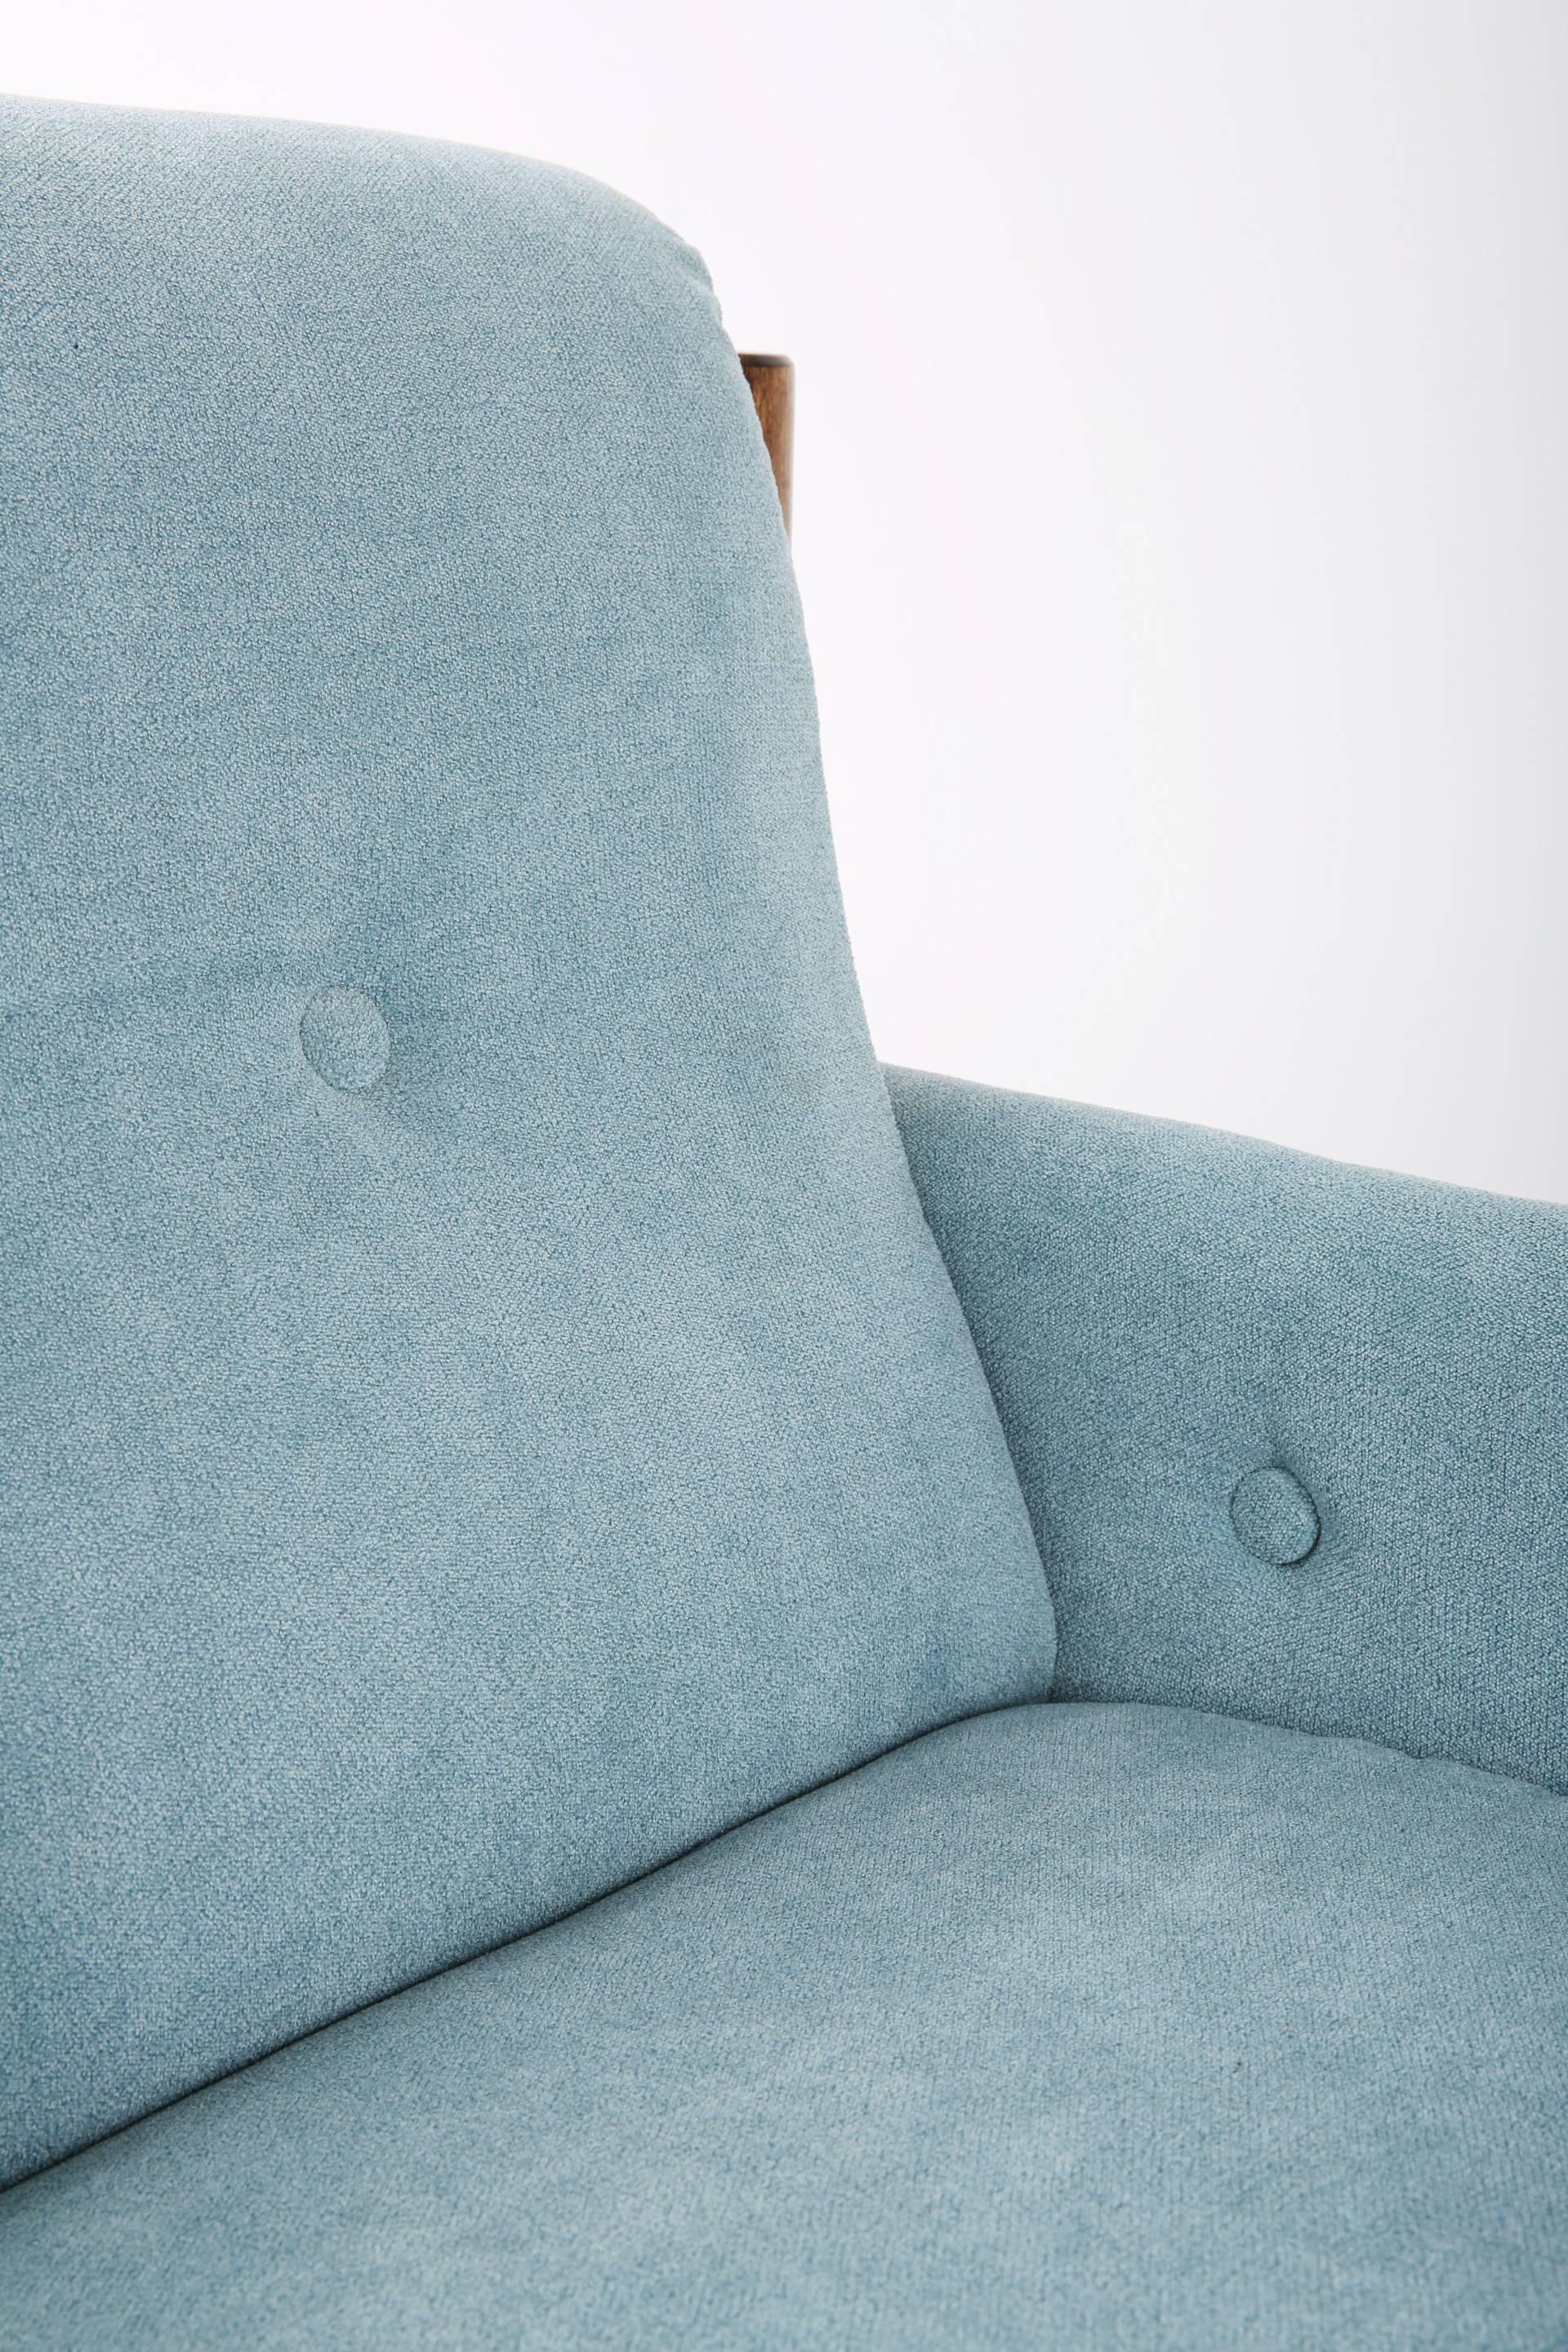 baby blue armchair